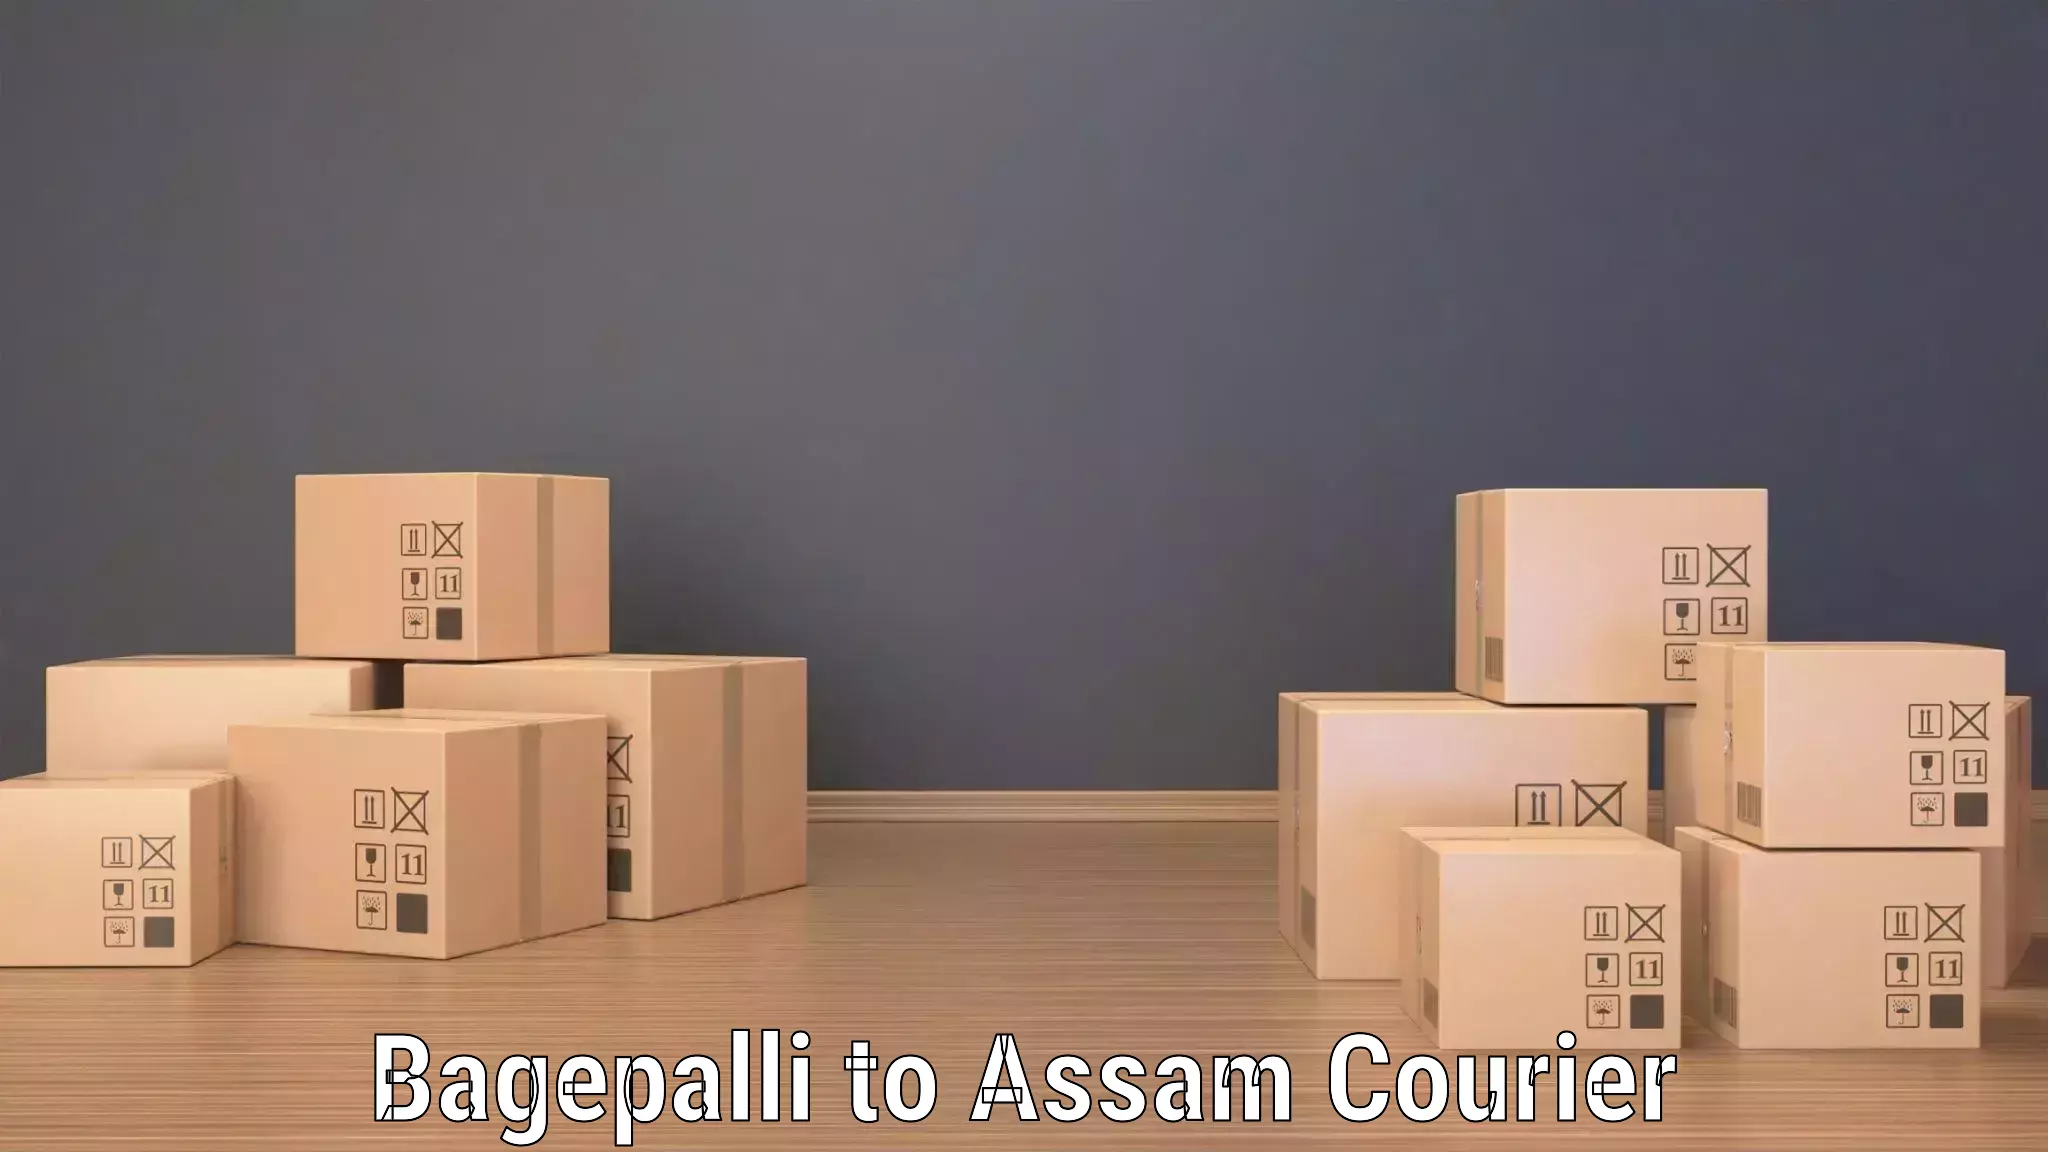 On-demand shipping options Bagepalli to IIIT Guwahati